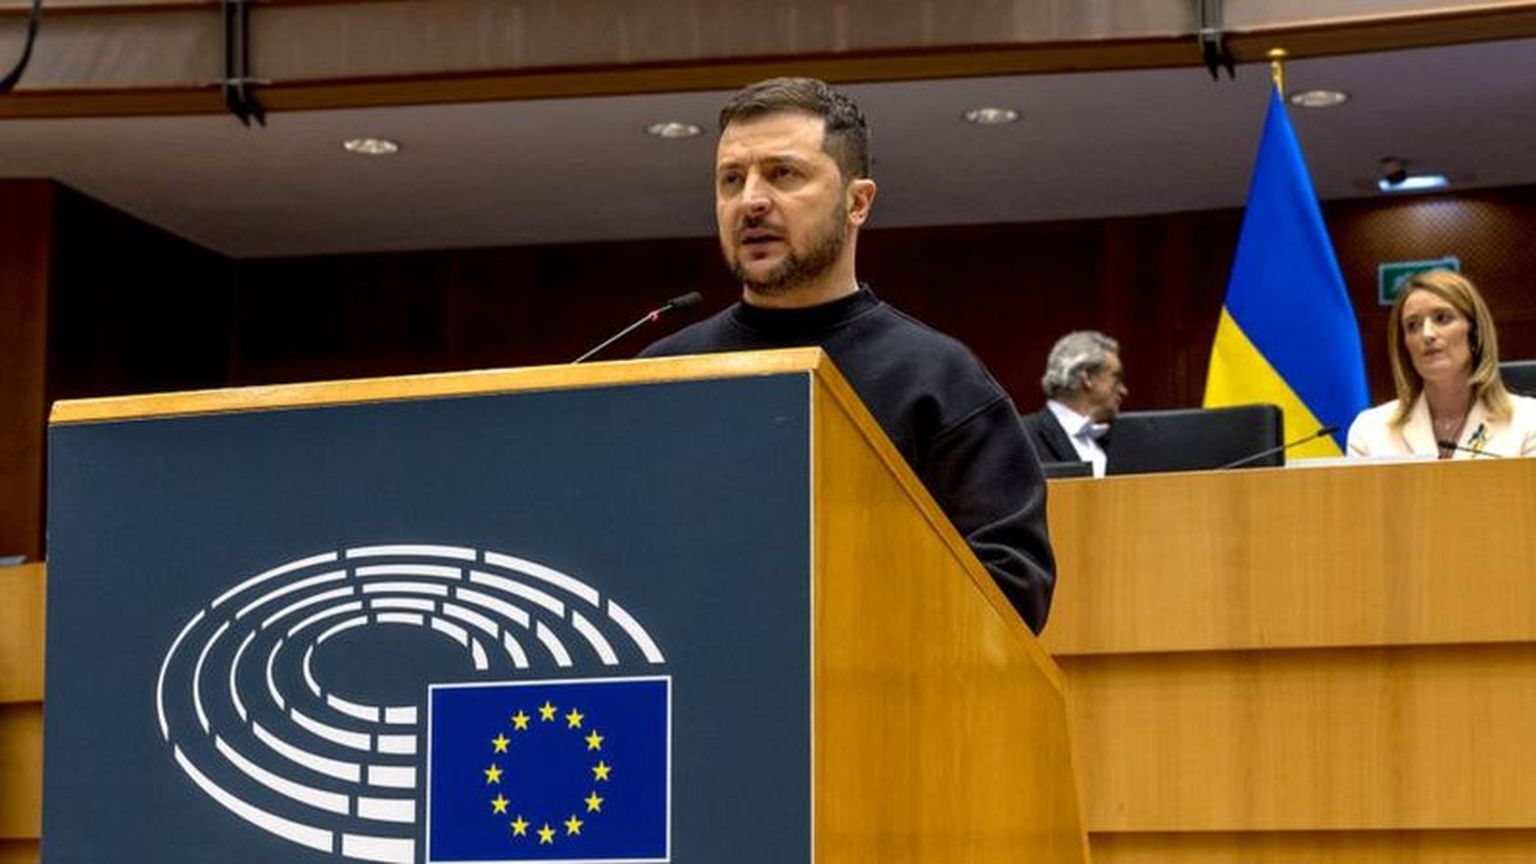 "Украина защищает Европу", - сказал Владимир Зеленский с трибуны Европарламента.